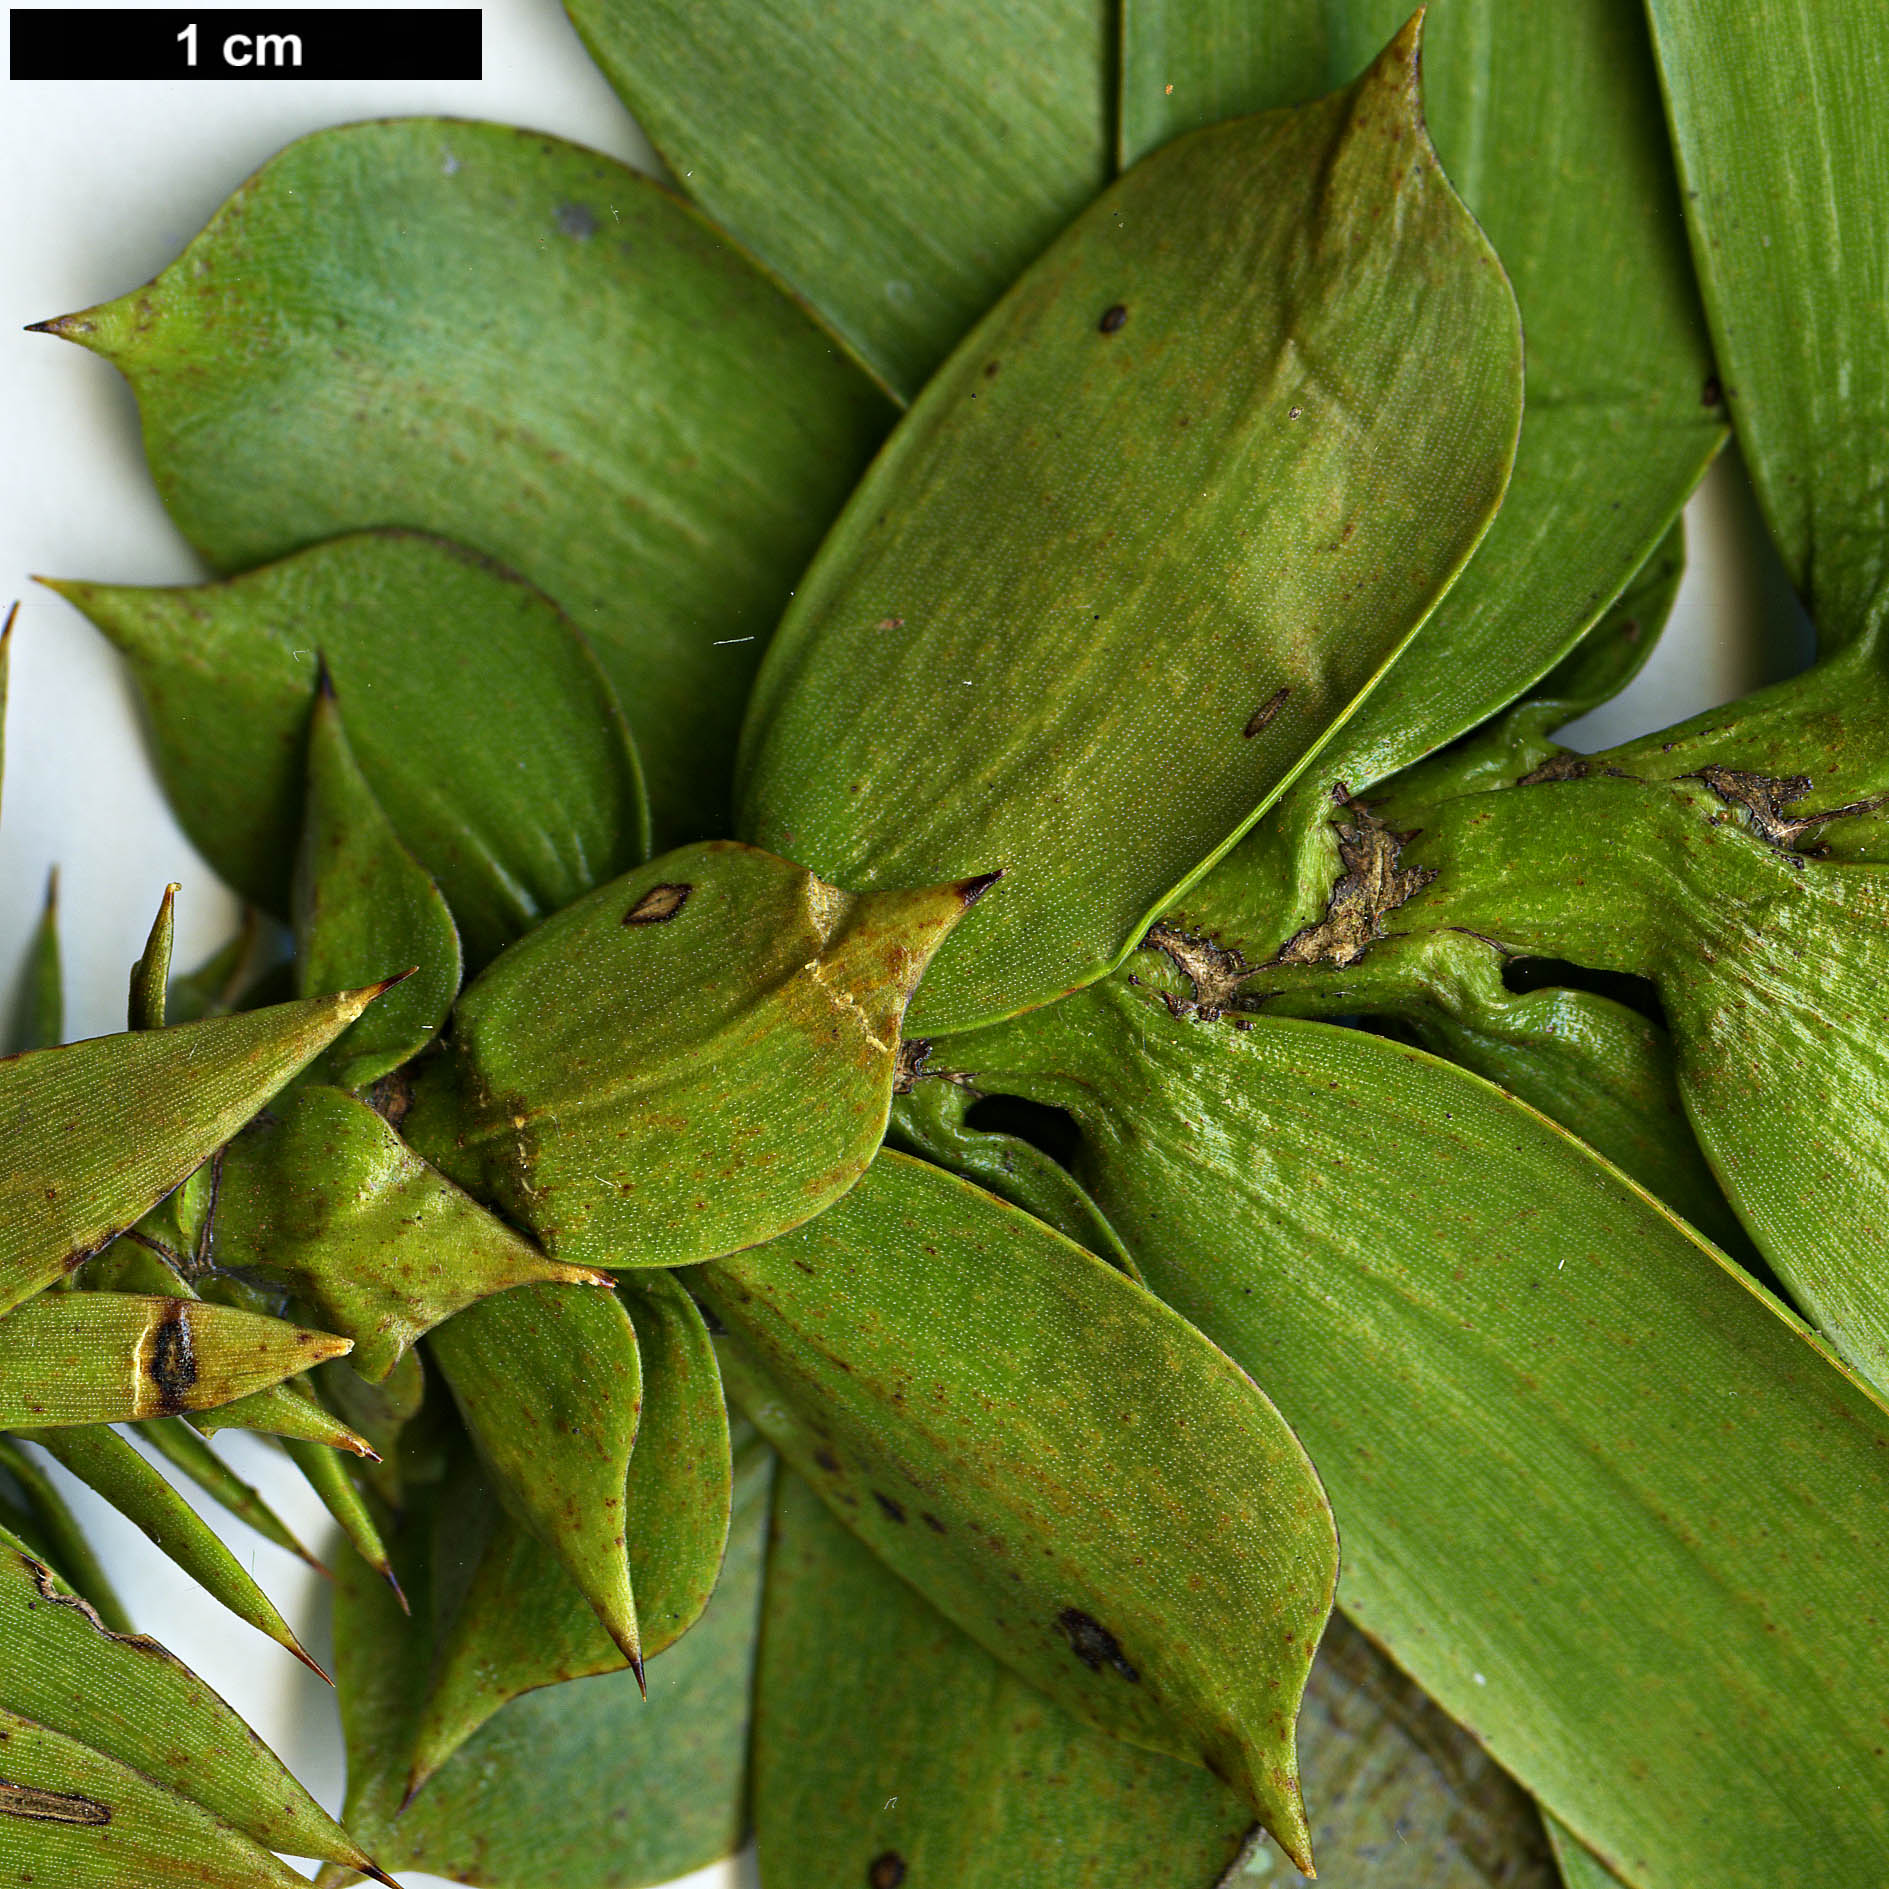 High resolution image: Family: Araucariaceae - Genus: Araucaria - Taxon: bidwillii